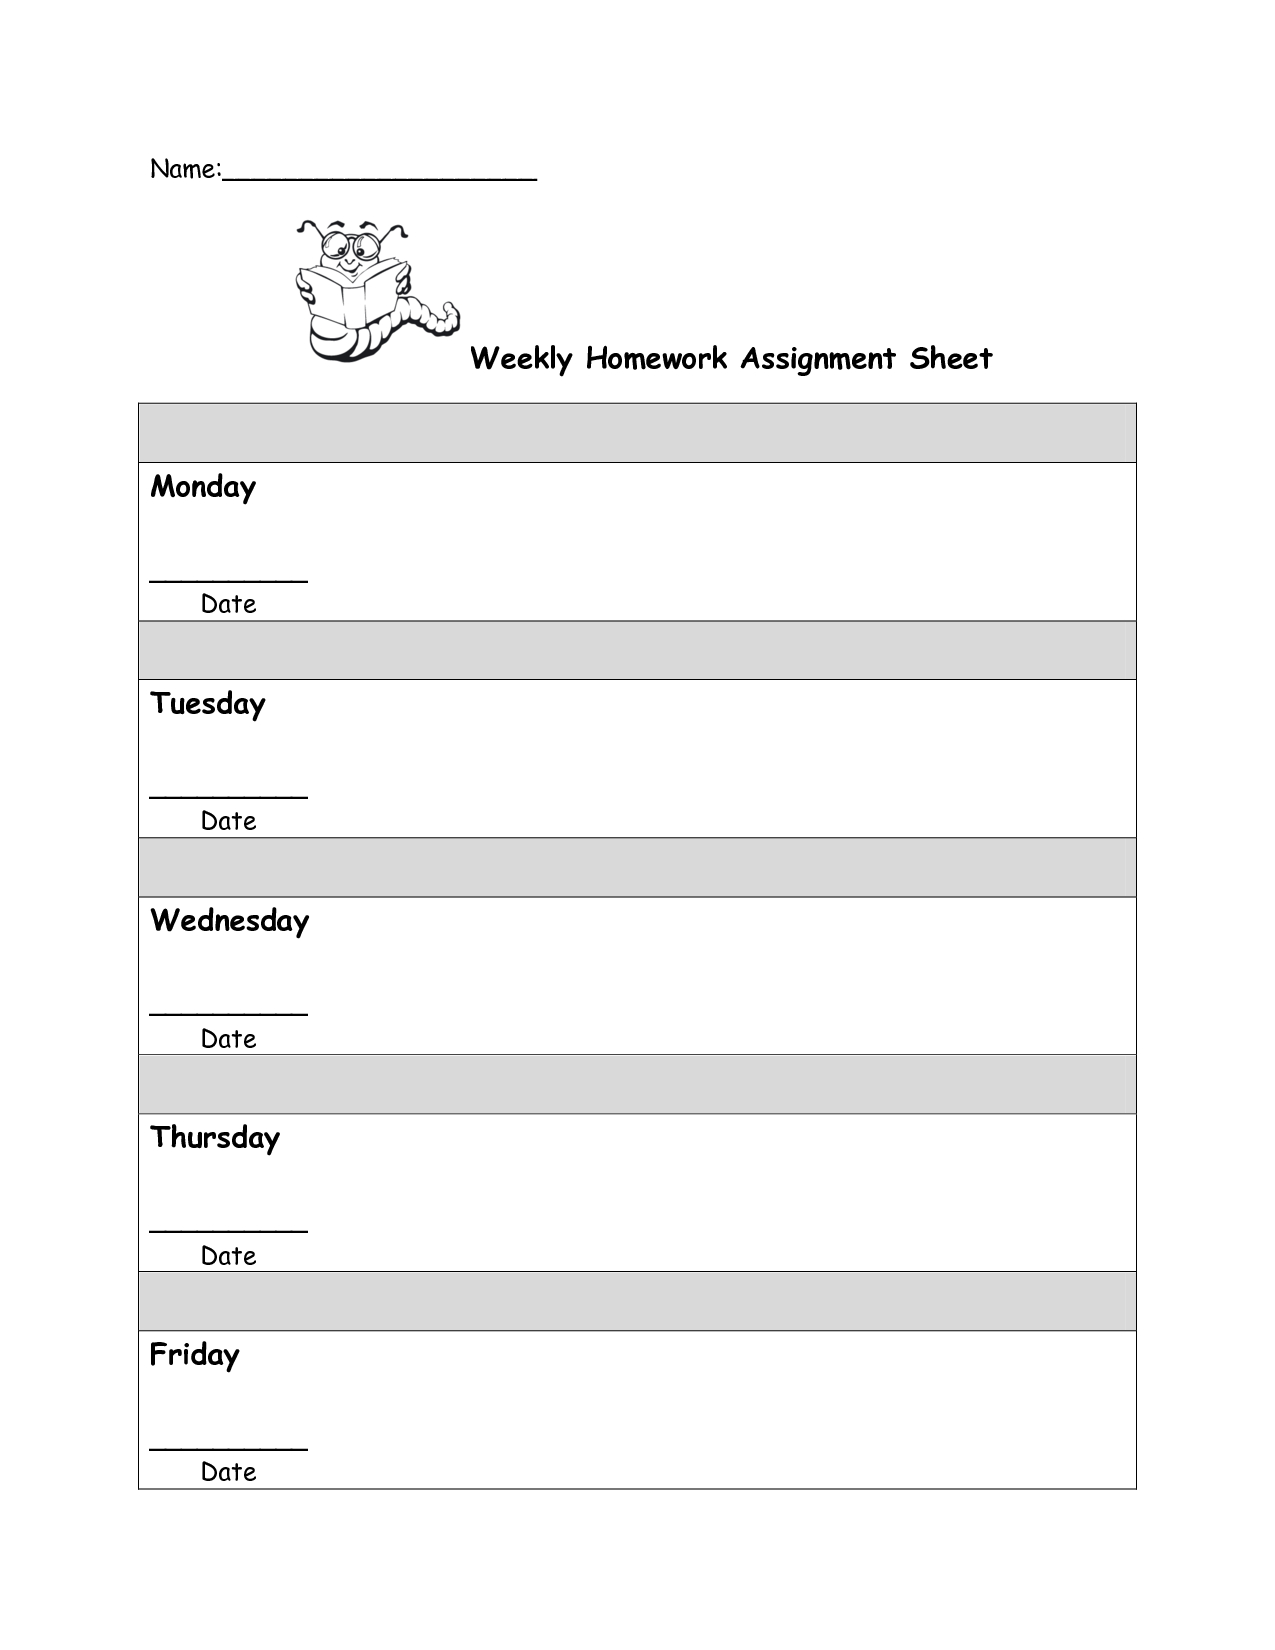 assignment sheet of